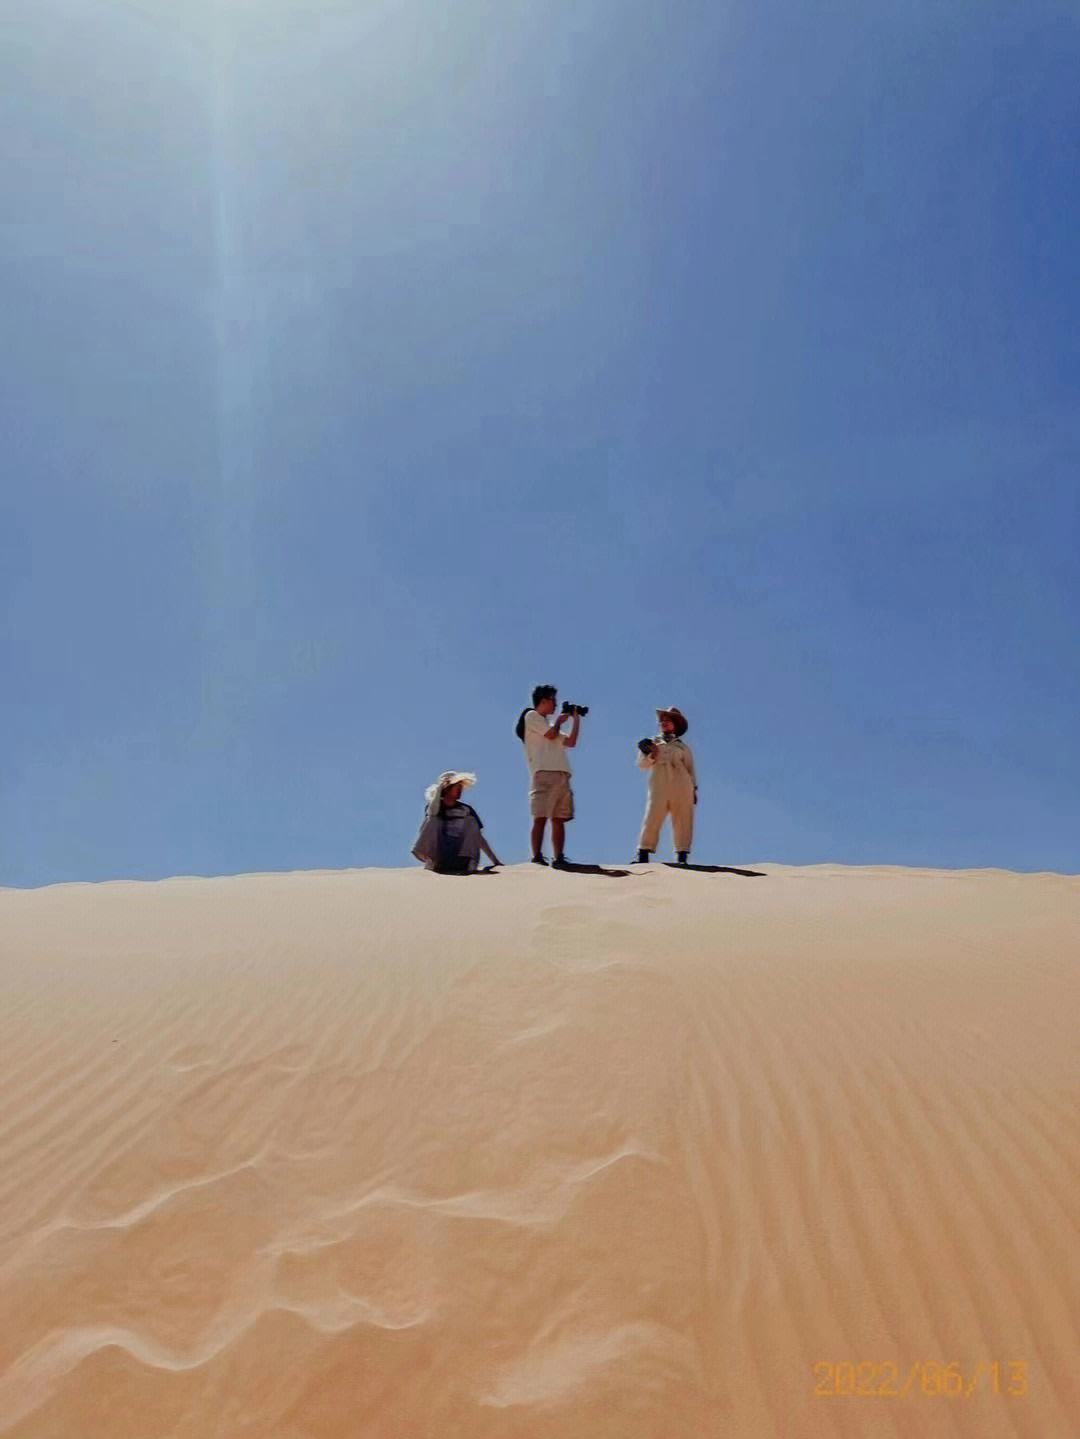 来自小伙伴在阿拉善发来的沙漠拍摄花絮分享